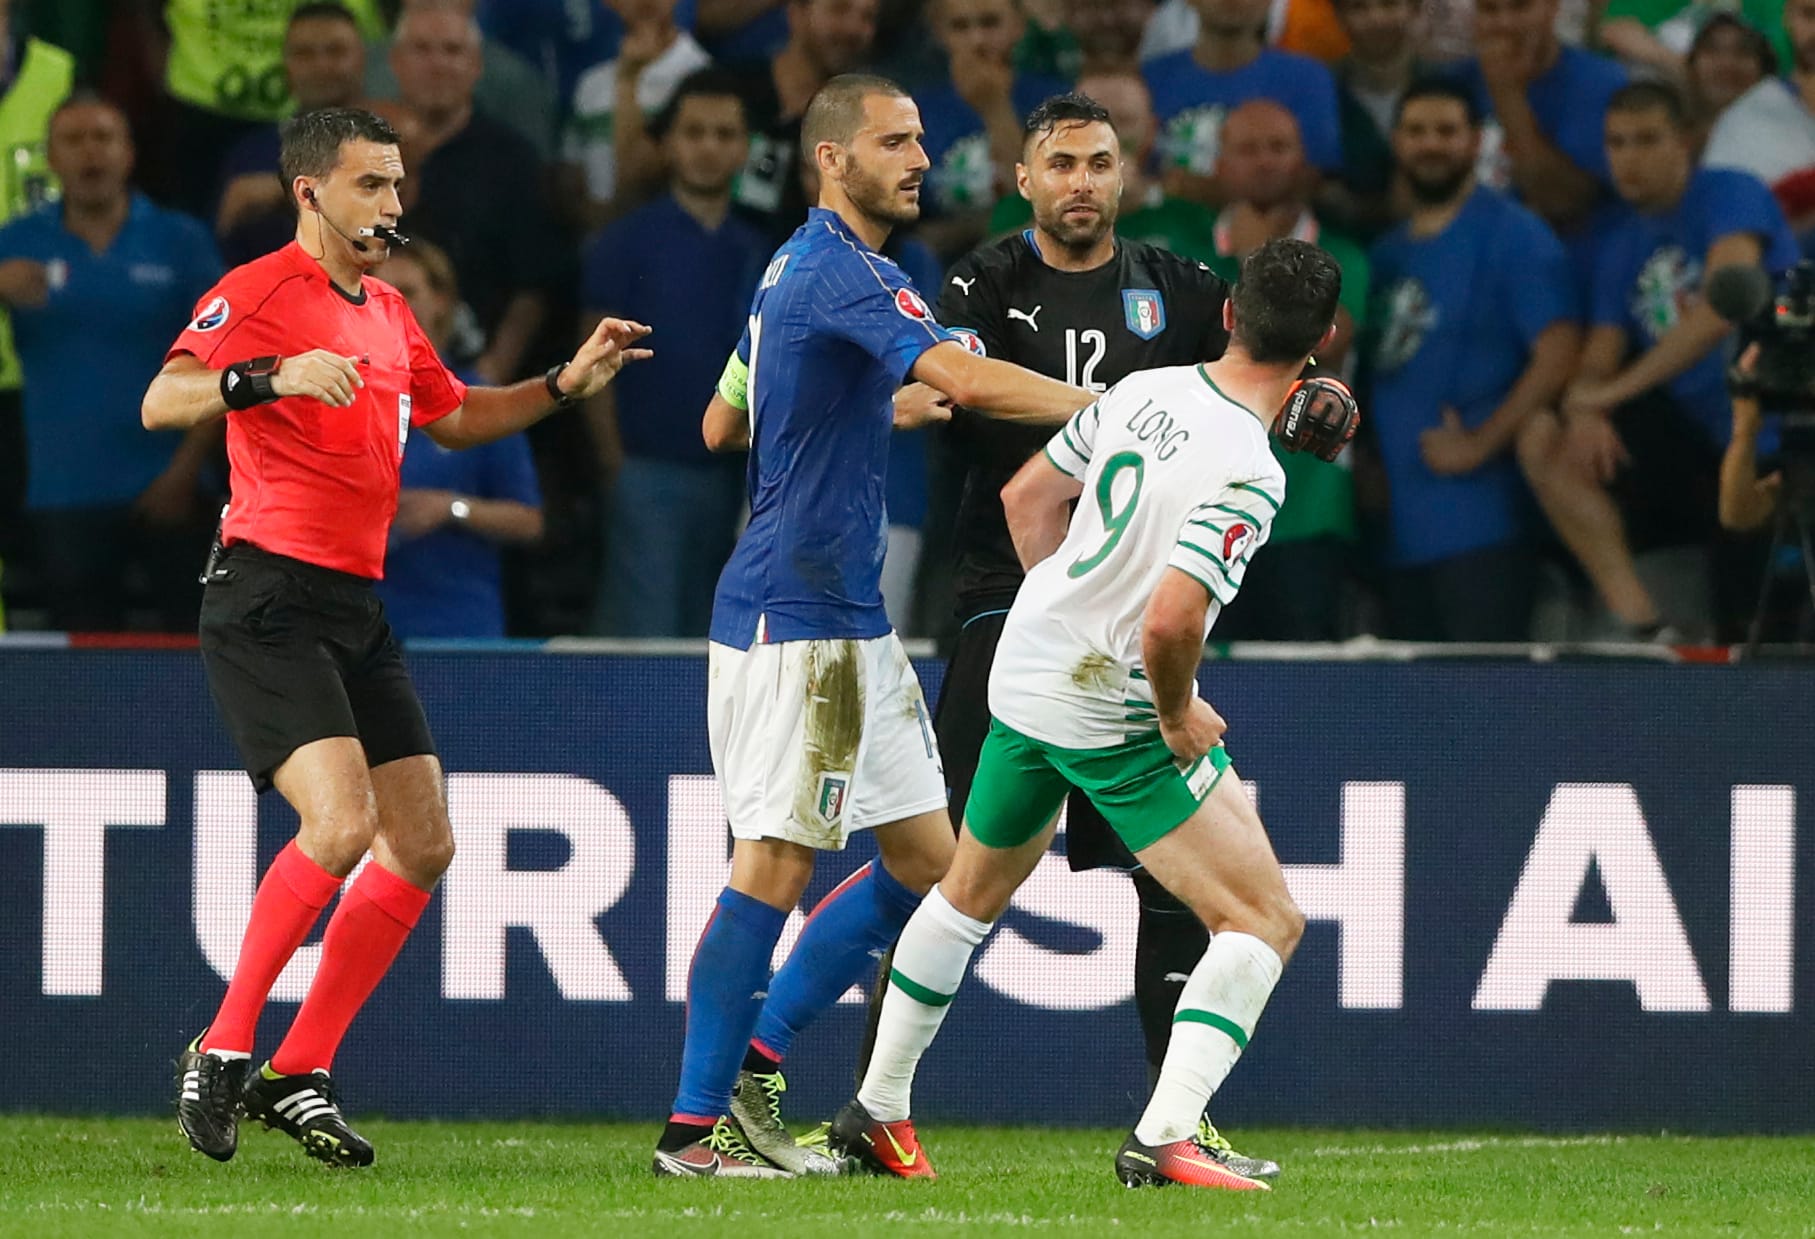 Klare Vorzeichen gibt es beim Spiel Italien gegen Irland. Während die Squadra Azzurra schon im Achtelfinale steht, muss Irland unbedingt gewinnen, um weiterzukommen.